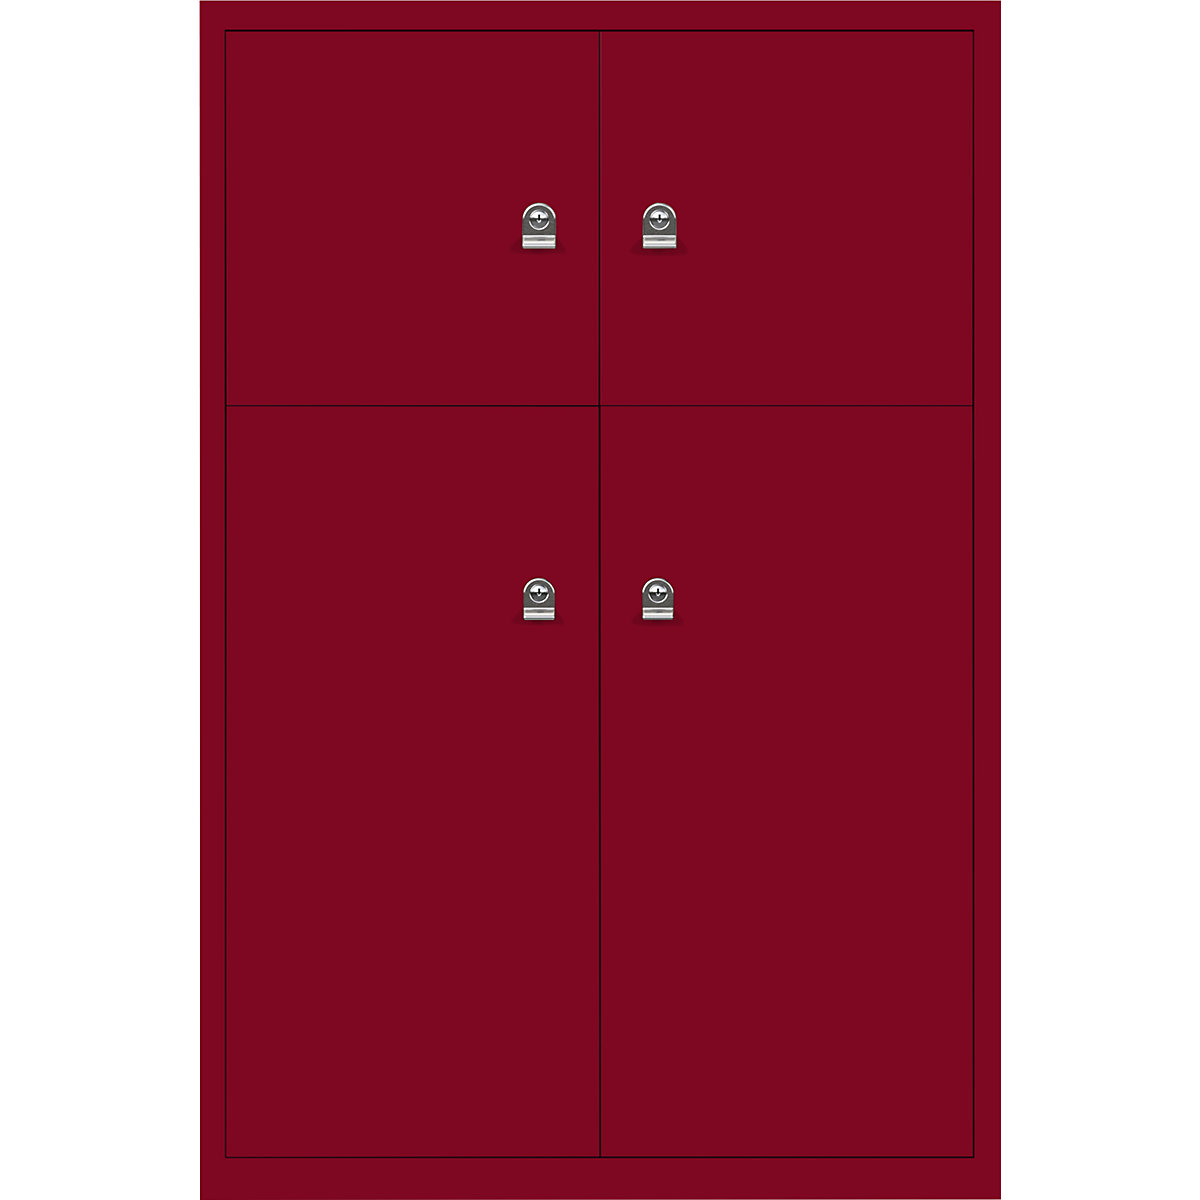 Armadietto LateralFile™ – BISLEY, con 4 scomparti con serratura, altezza 2 x 375 mm, 2 x 755 mm, rosso cardinale-17